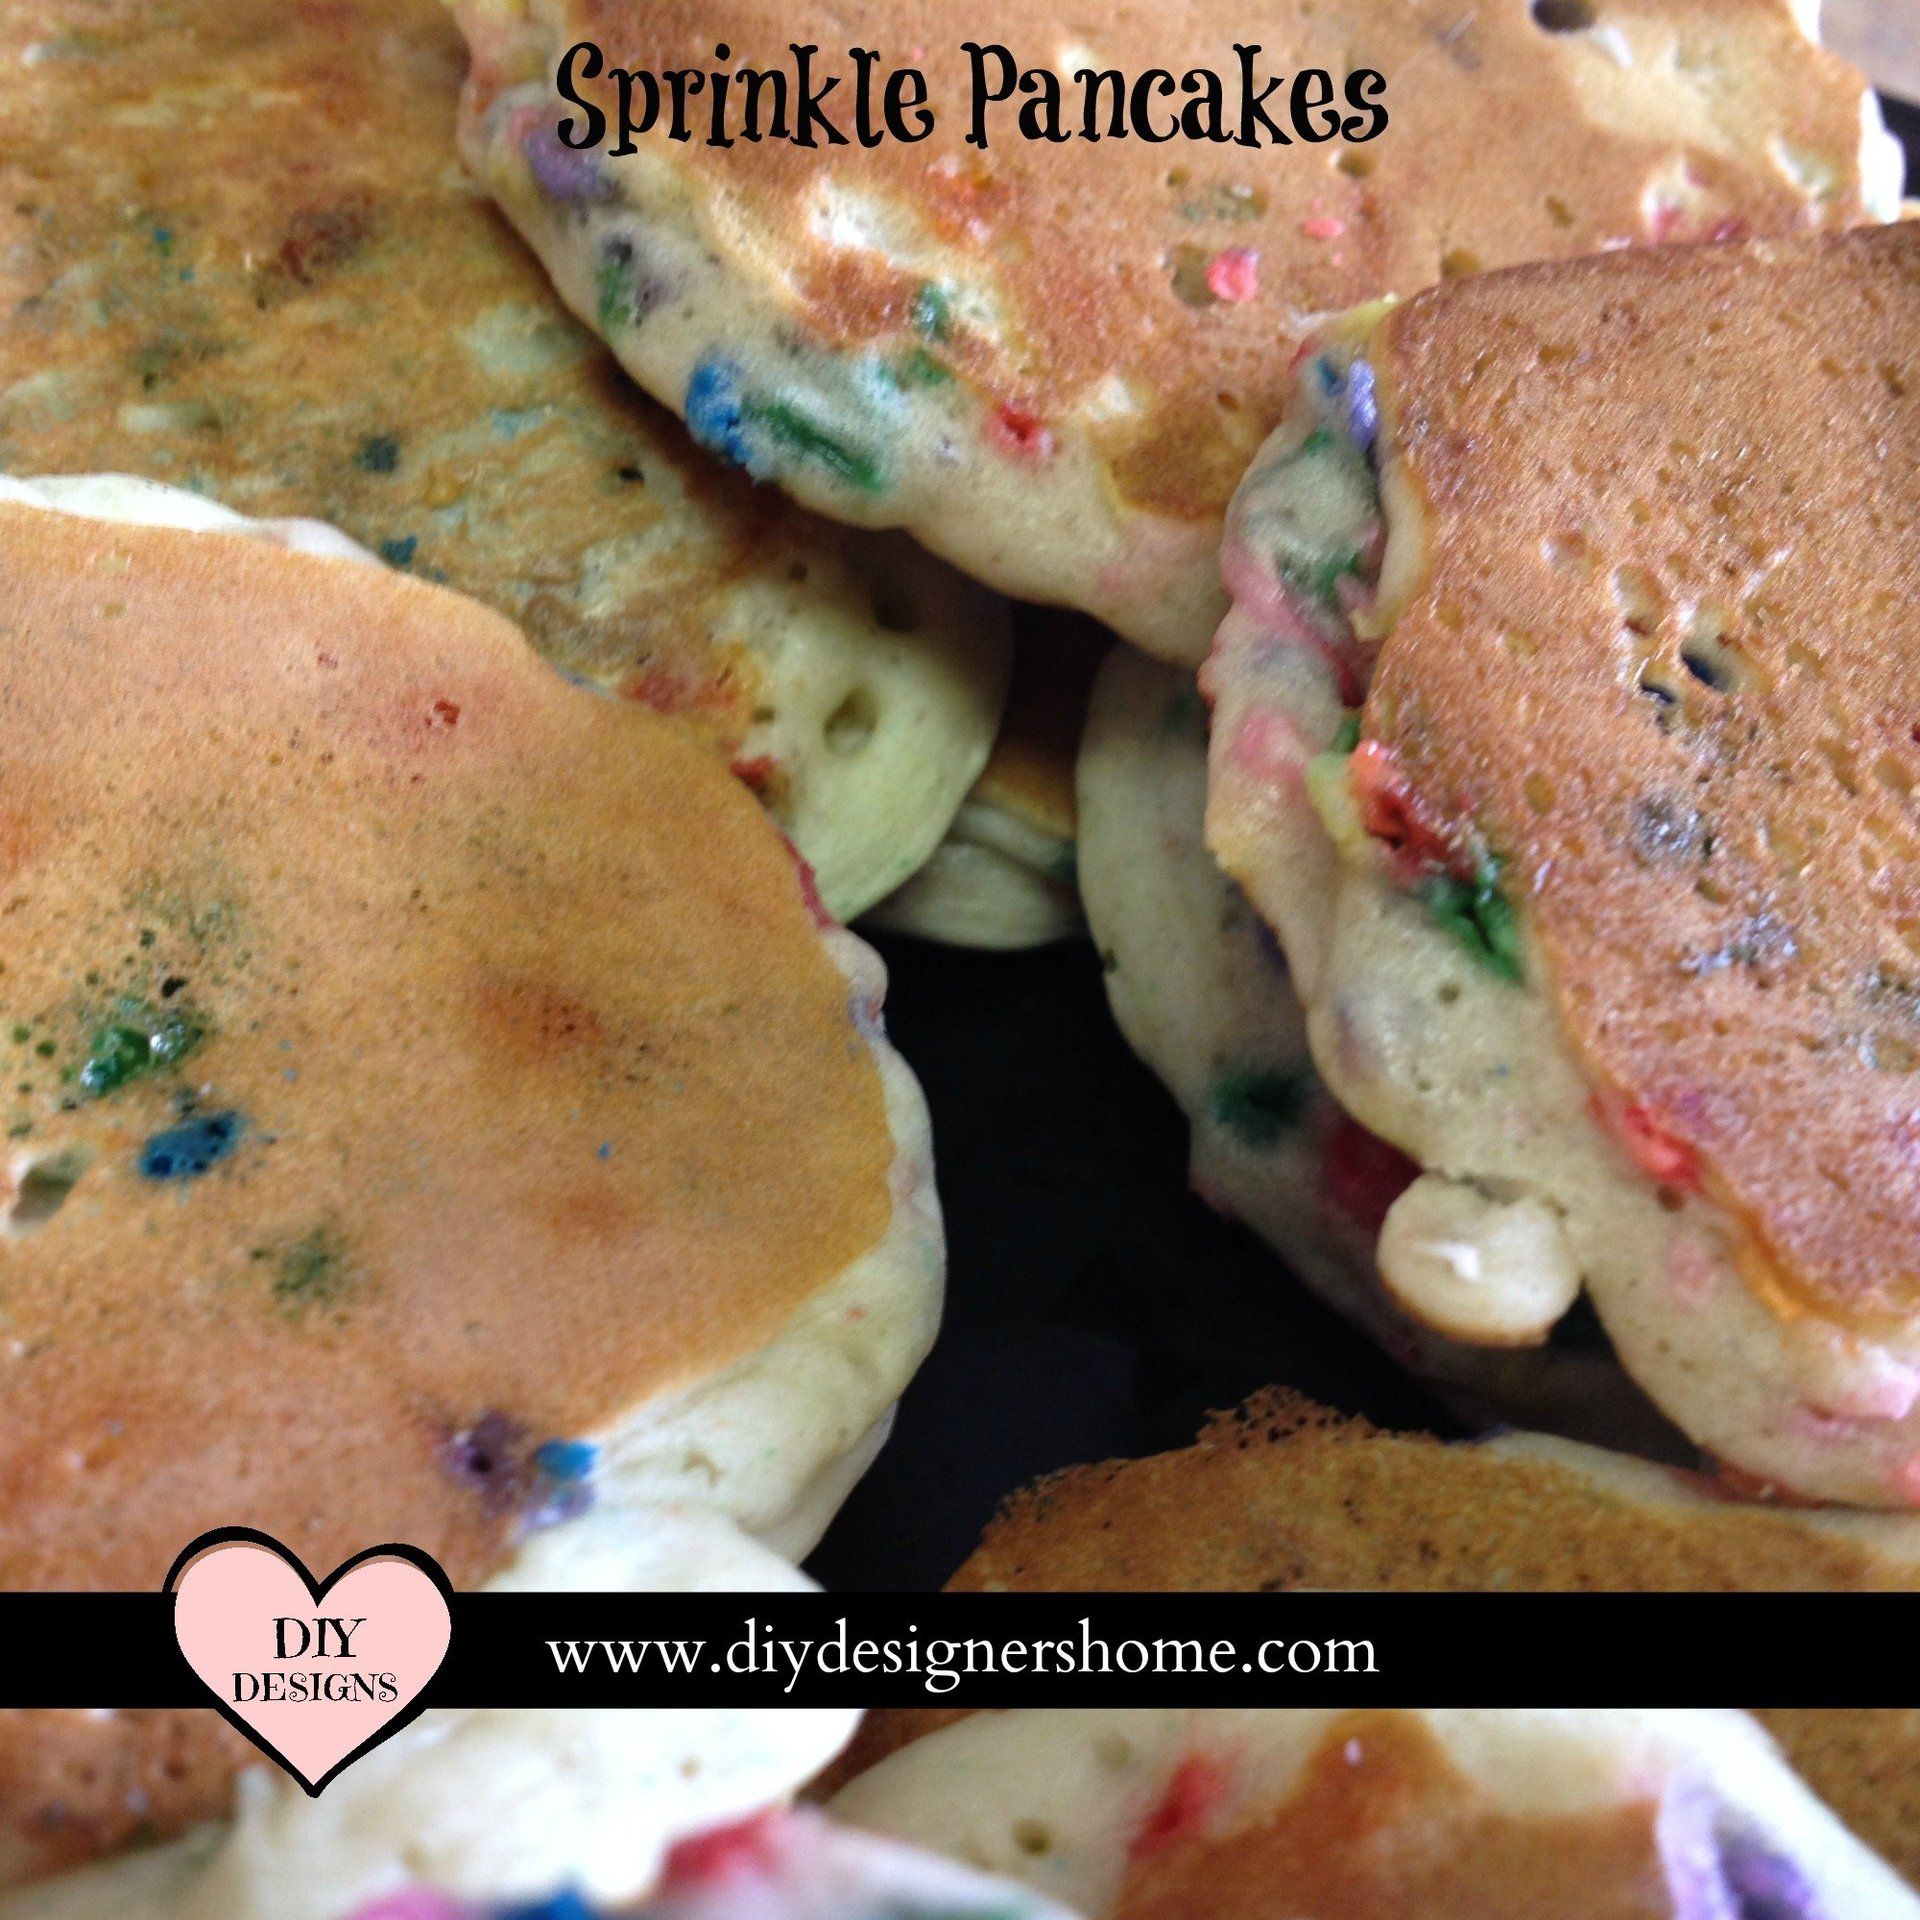 Sprinkle Pancakes For Breakfast or Dinner